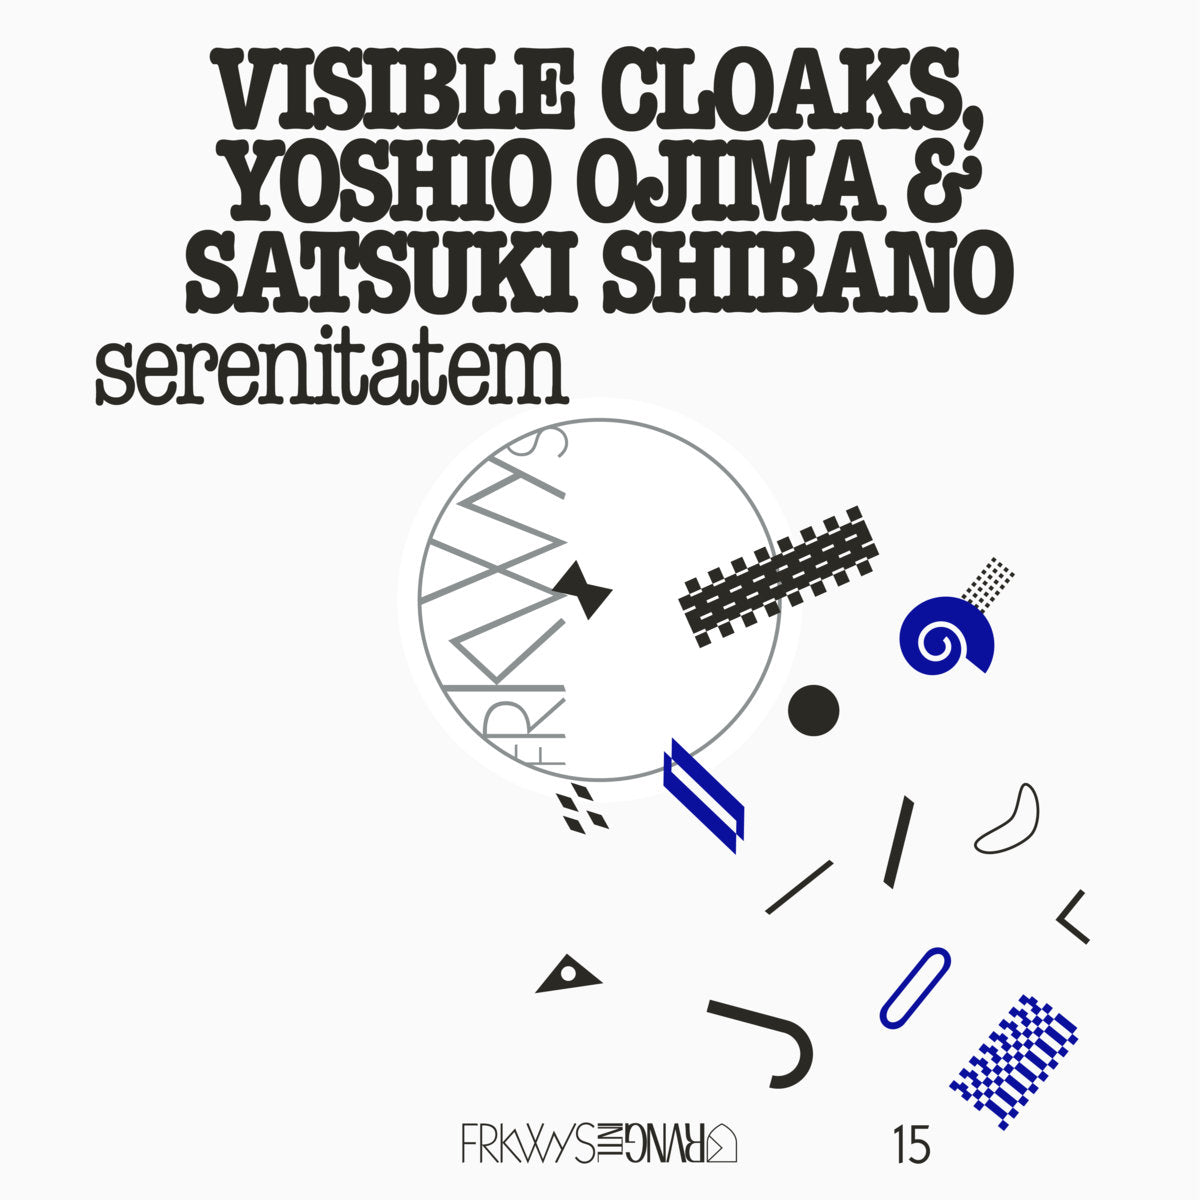 Visible Cloaks with Yoshio Ojima and Satsuki Shibano 'FRKWYS Vol. 15: serenitatem' LP